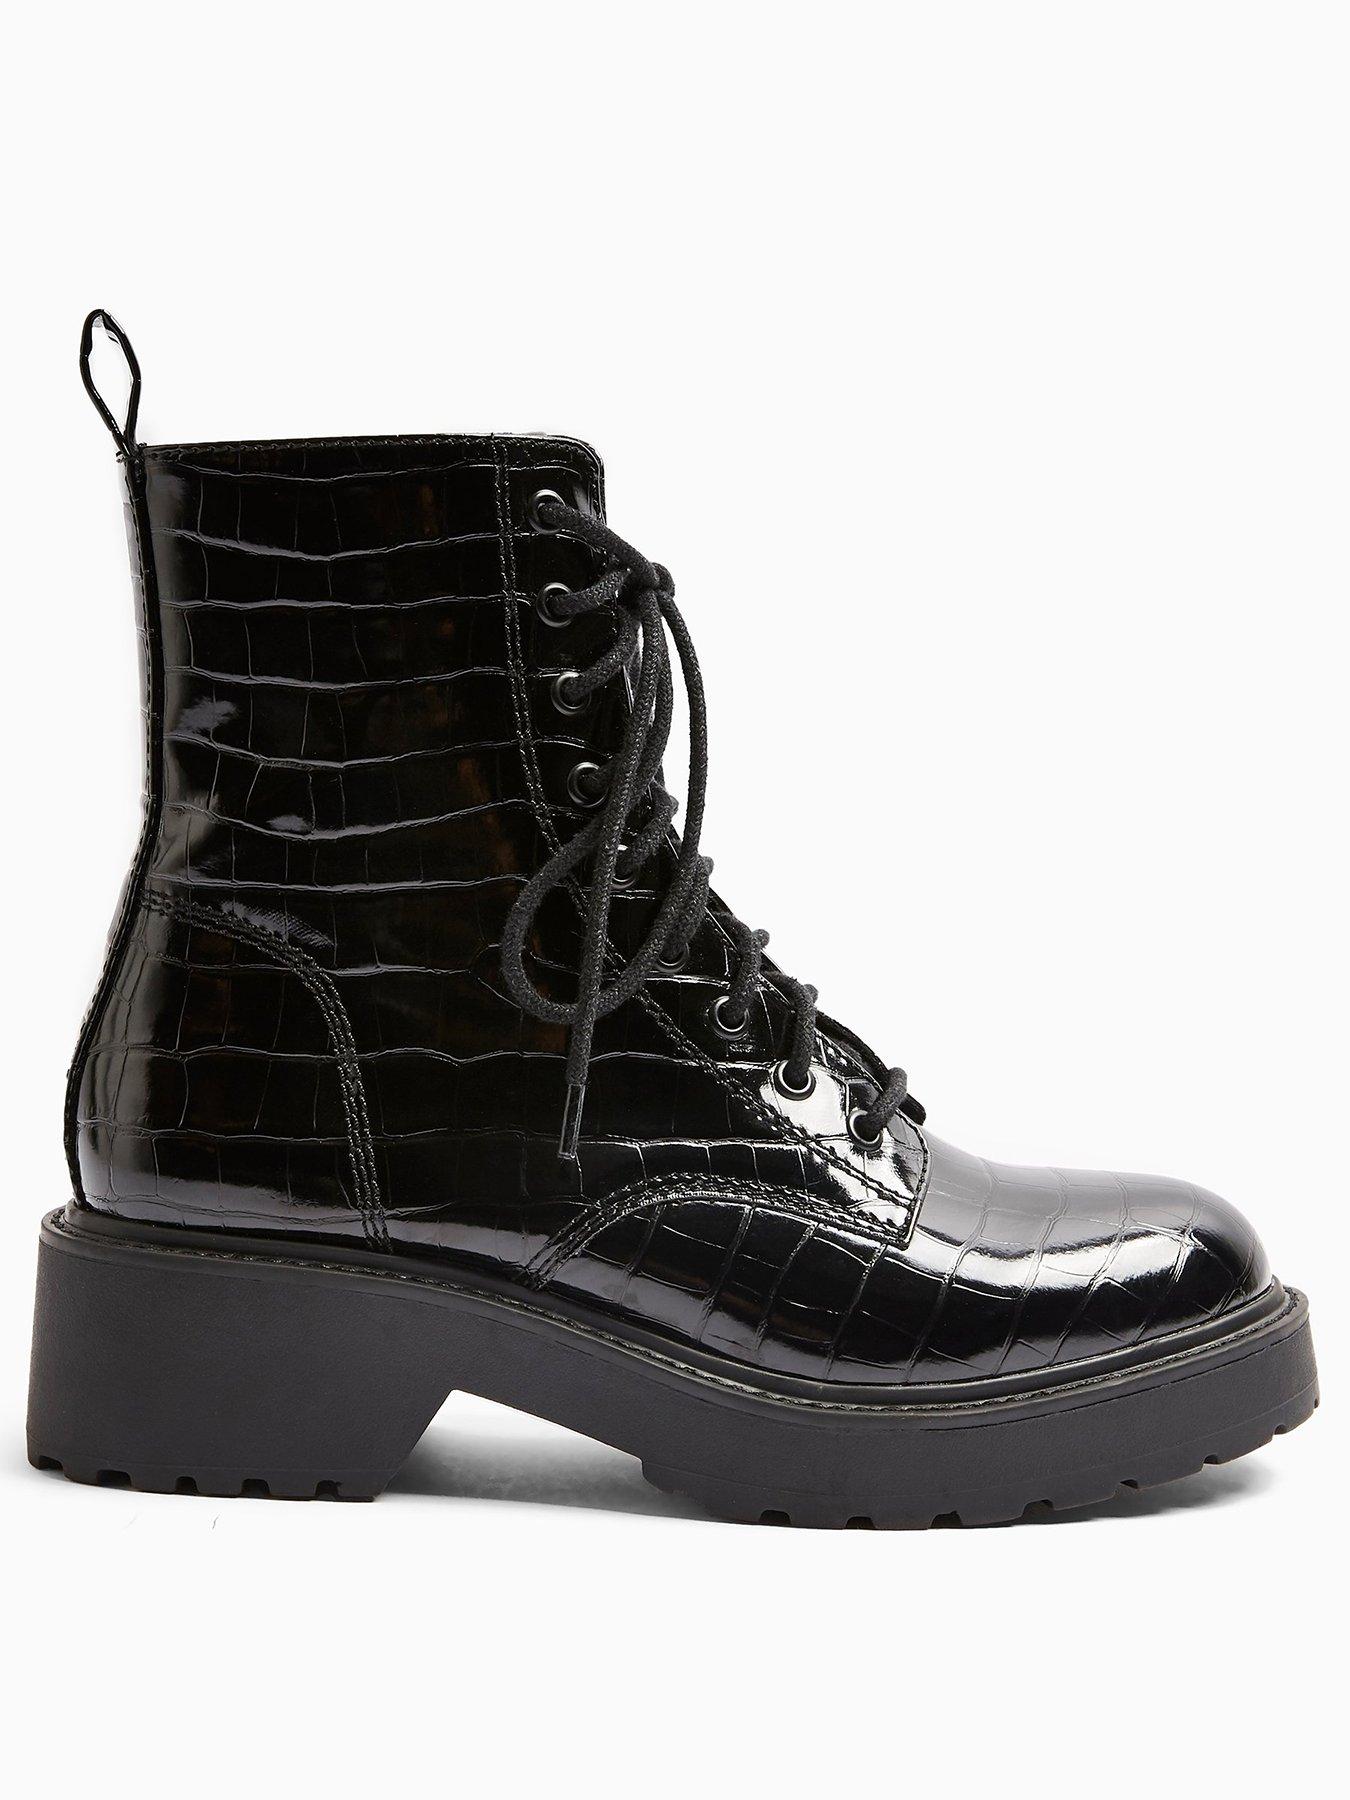 croc boots topshop